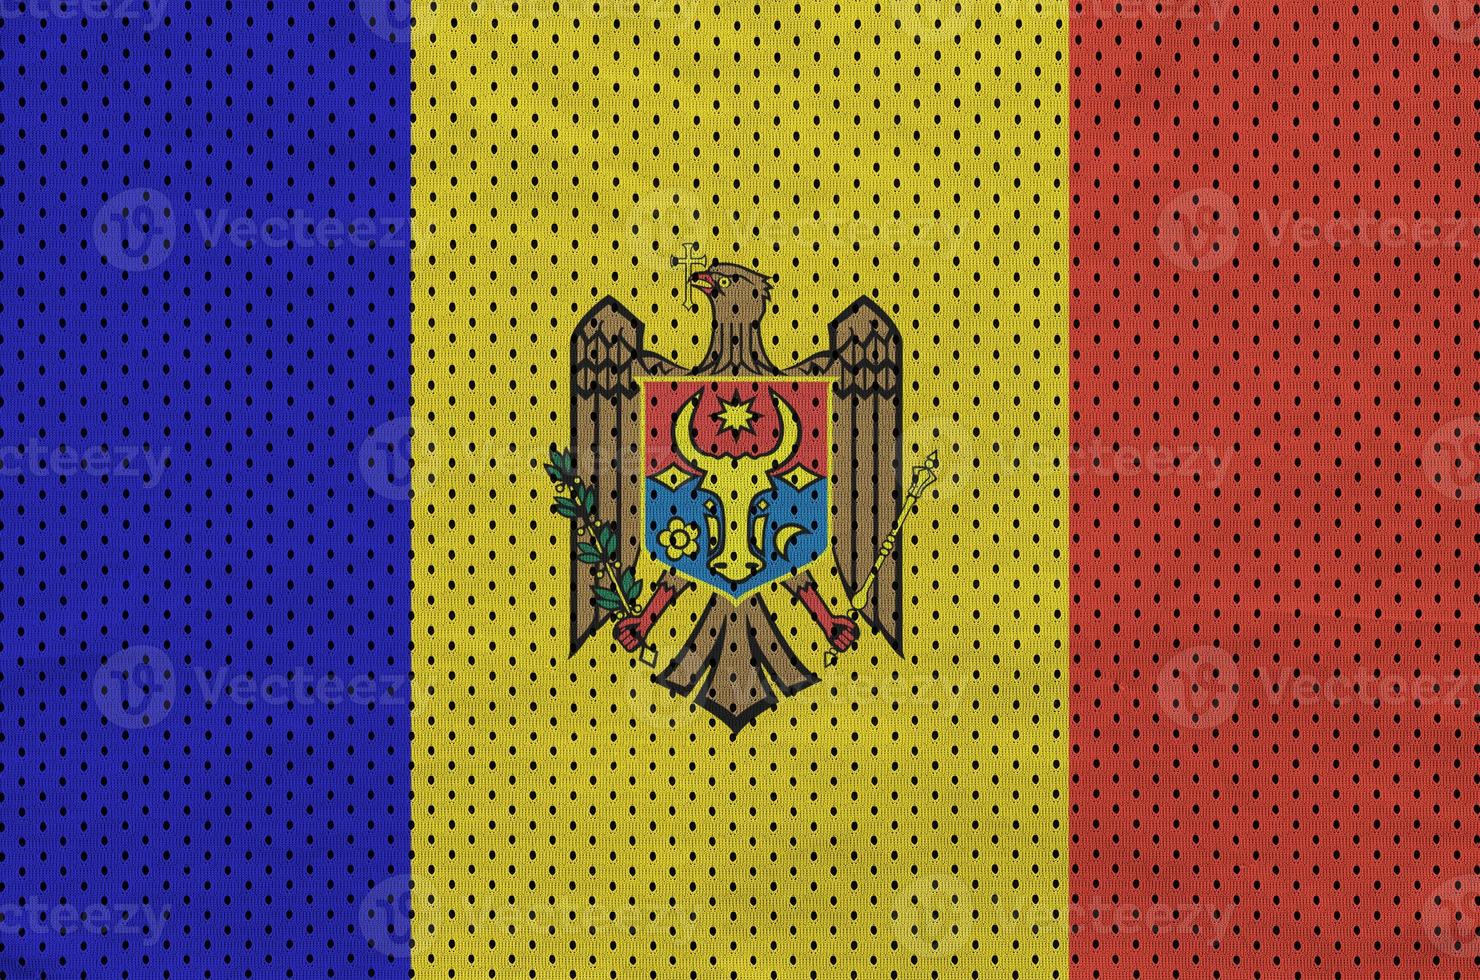 moldavien flagga tryckt på en polyester nylon- sportkläder maska tyg foto